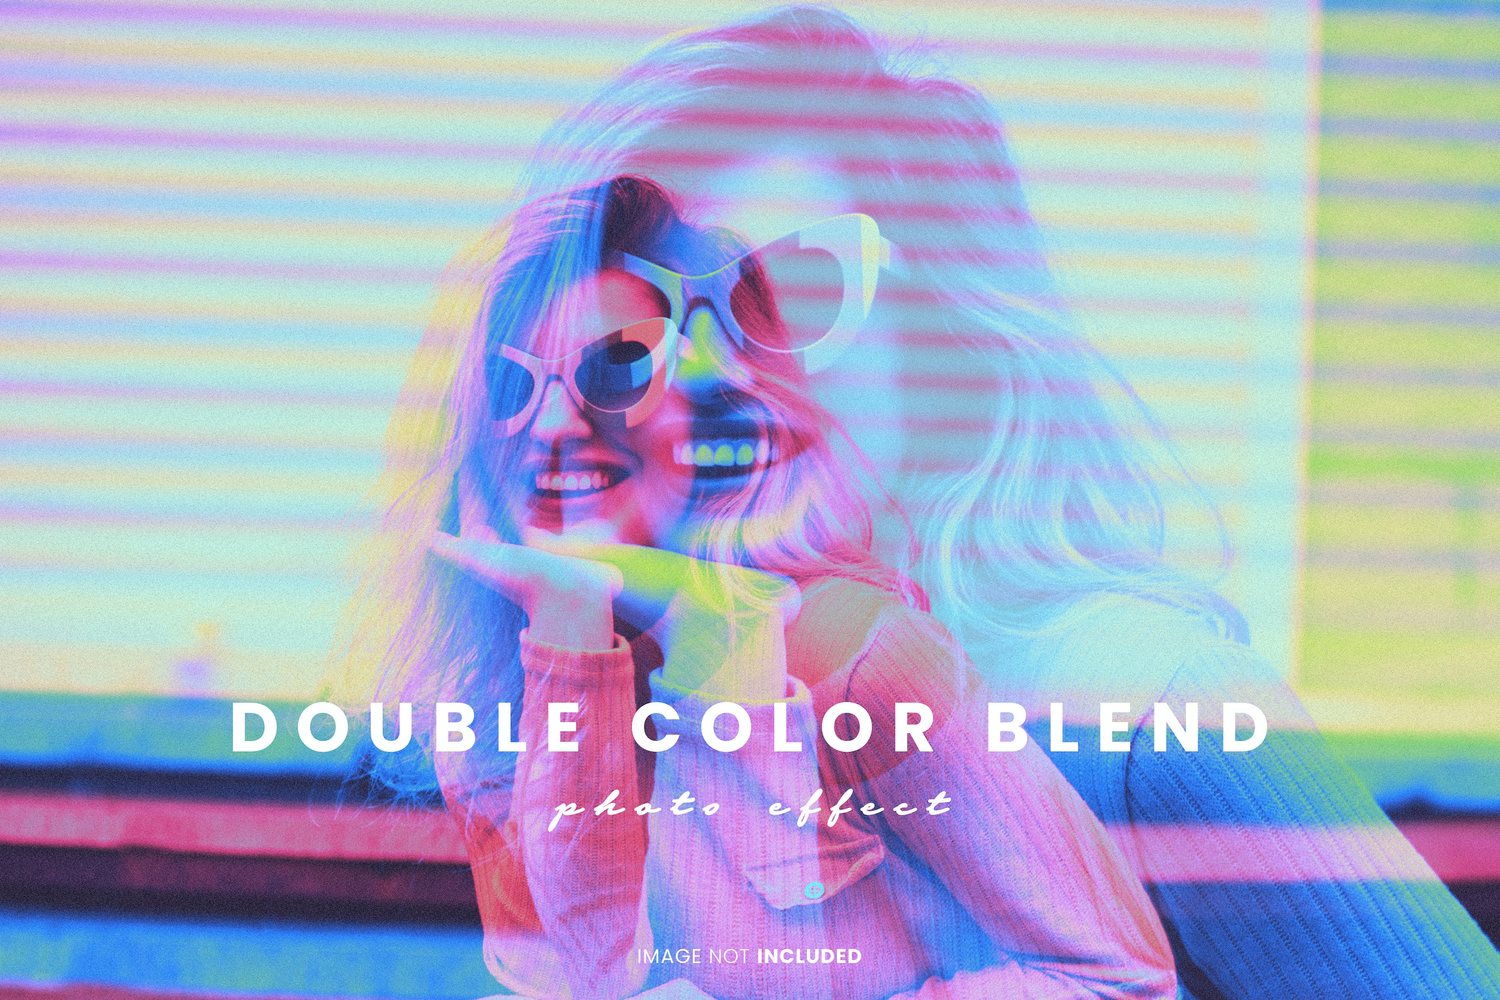 4289 双色混合效果照片修图特效PS样式模板素材 Double Color Blend Photo Effect@GOOODME.COM